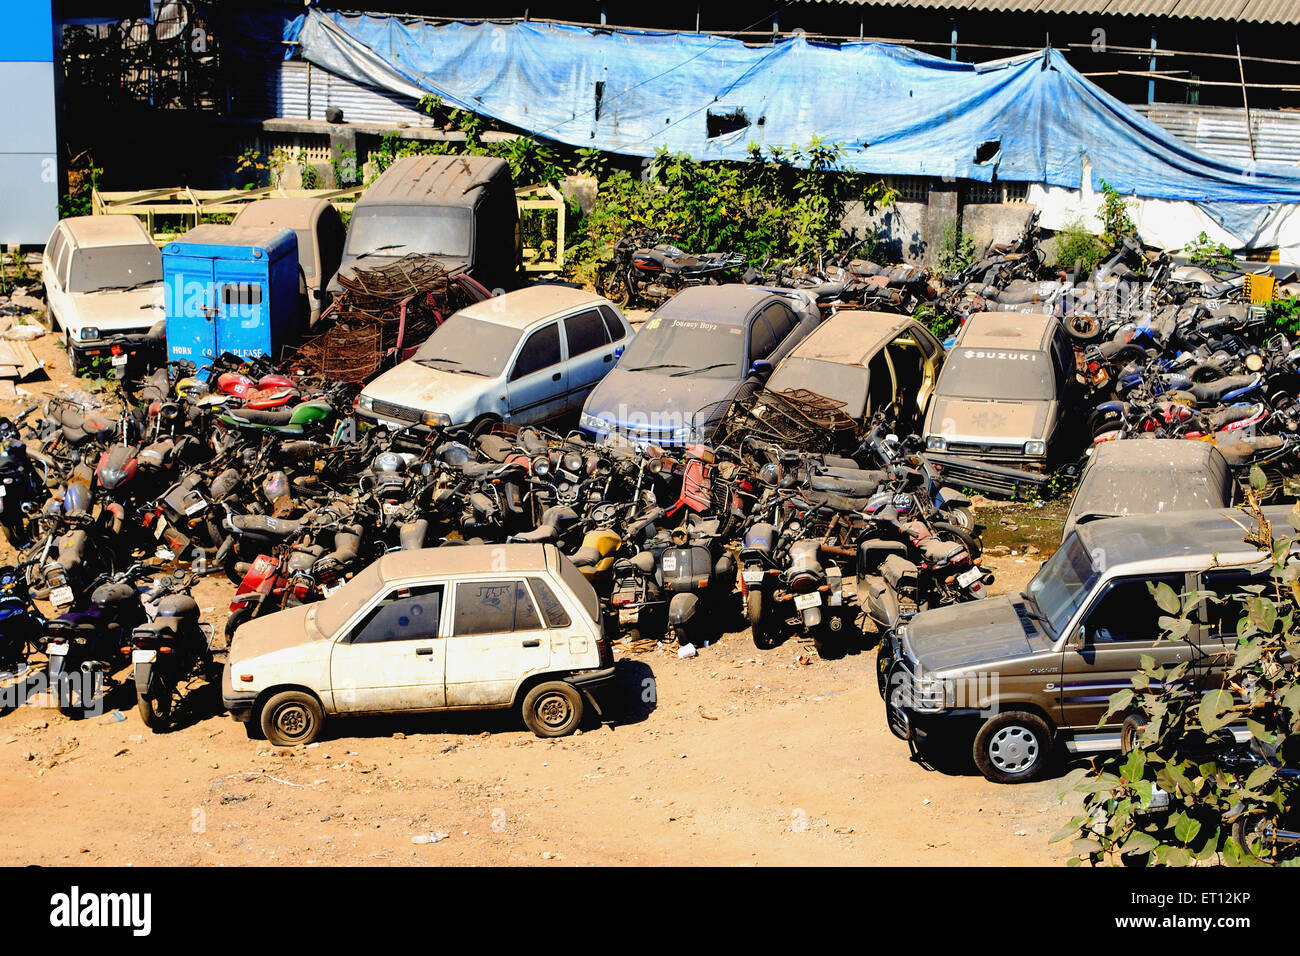 Coches y motos en ruinas ; India Foto de stock